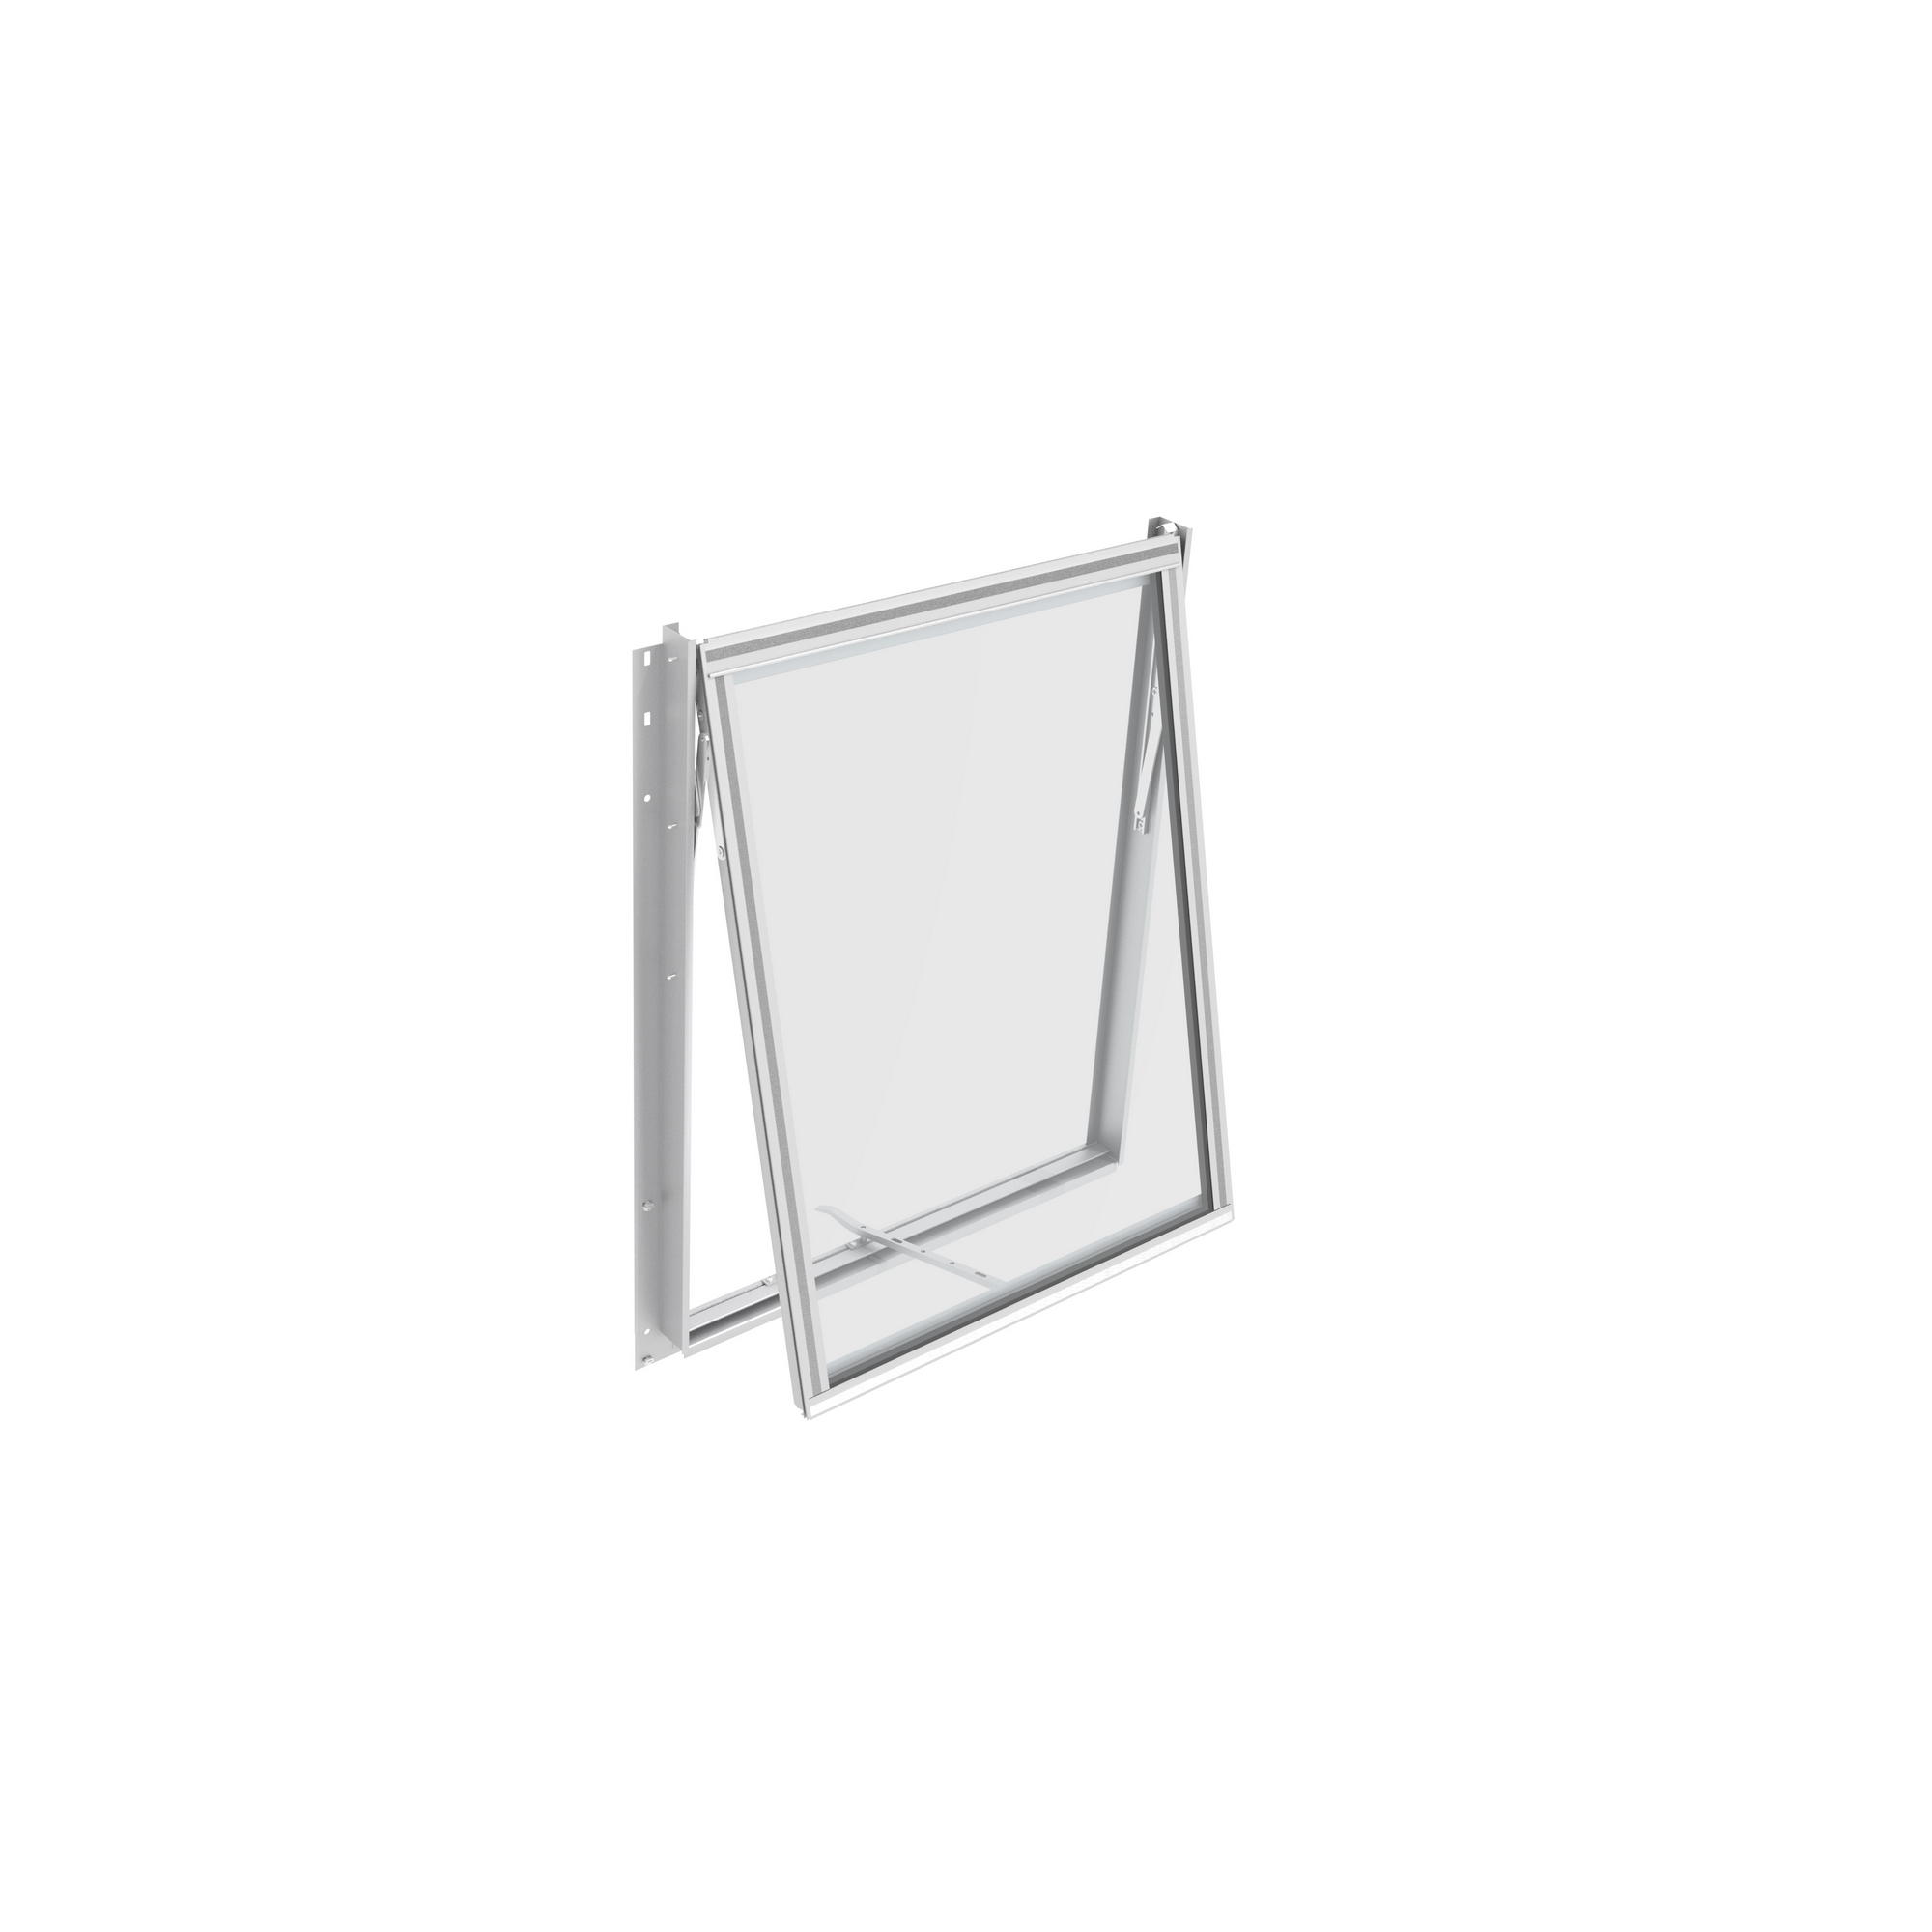 Seitenfenster für Gewächshäuser 'Zeus Comfort/Fortuna' aluminiumfarben + product picture